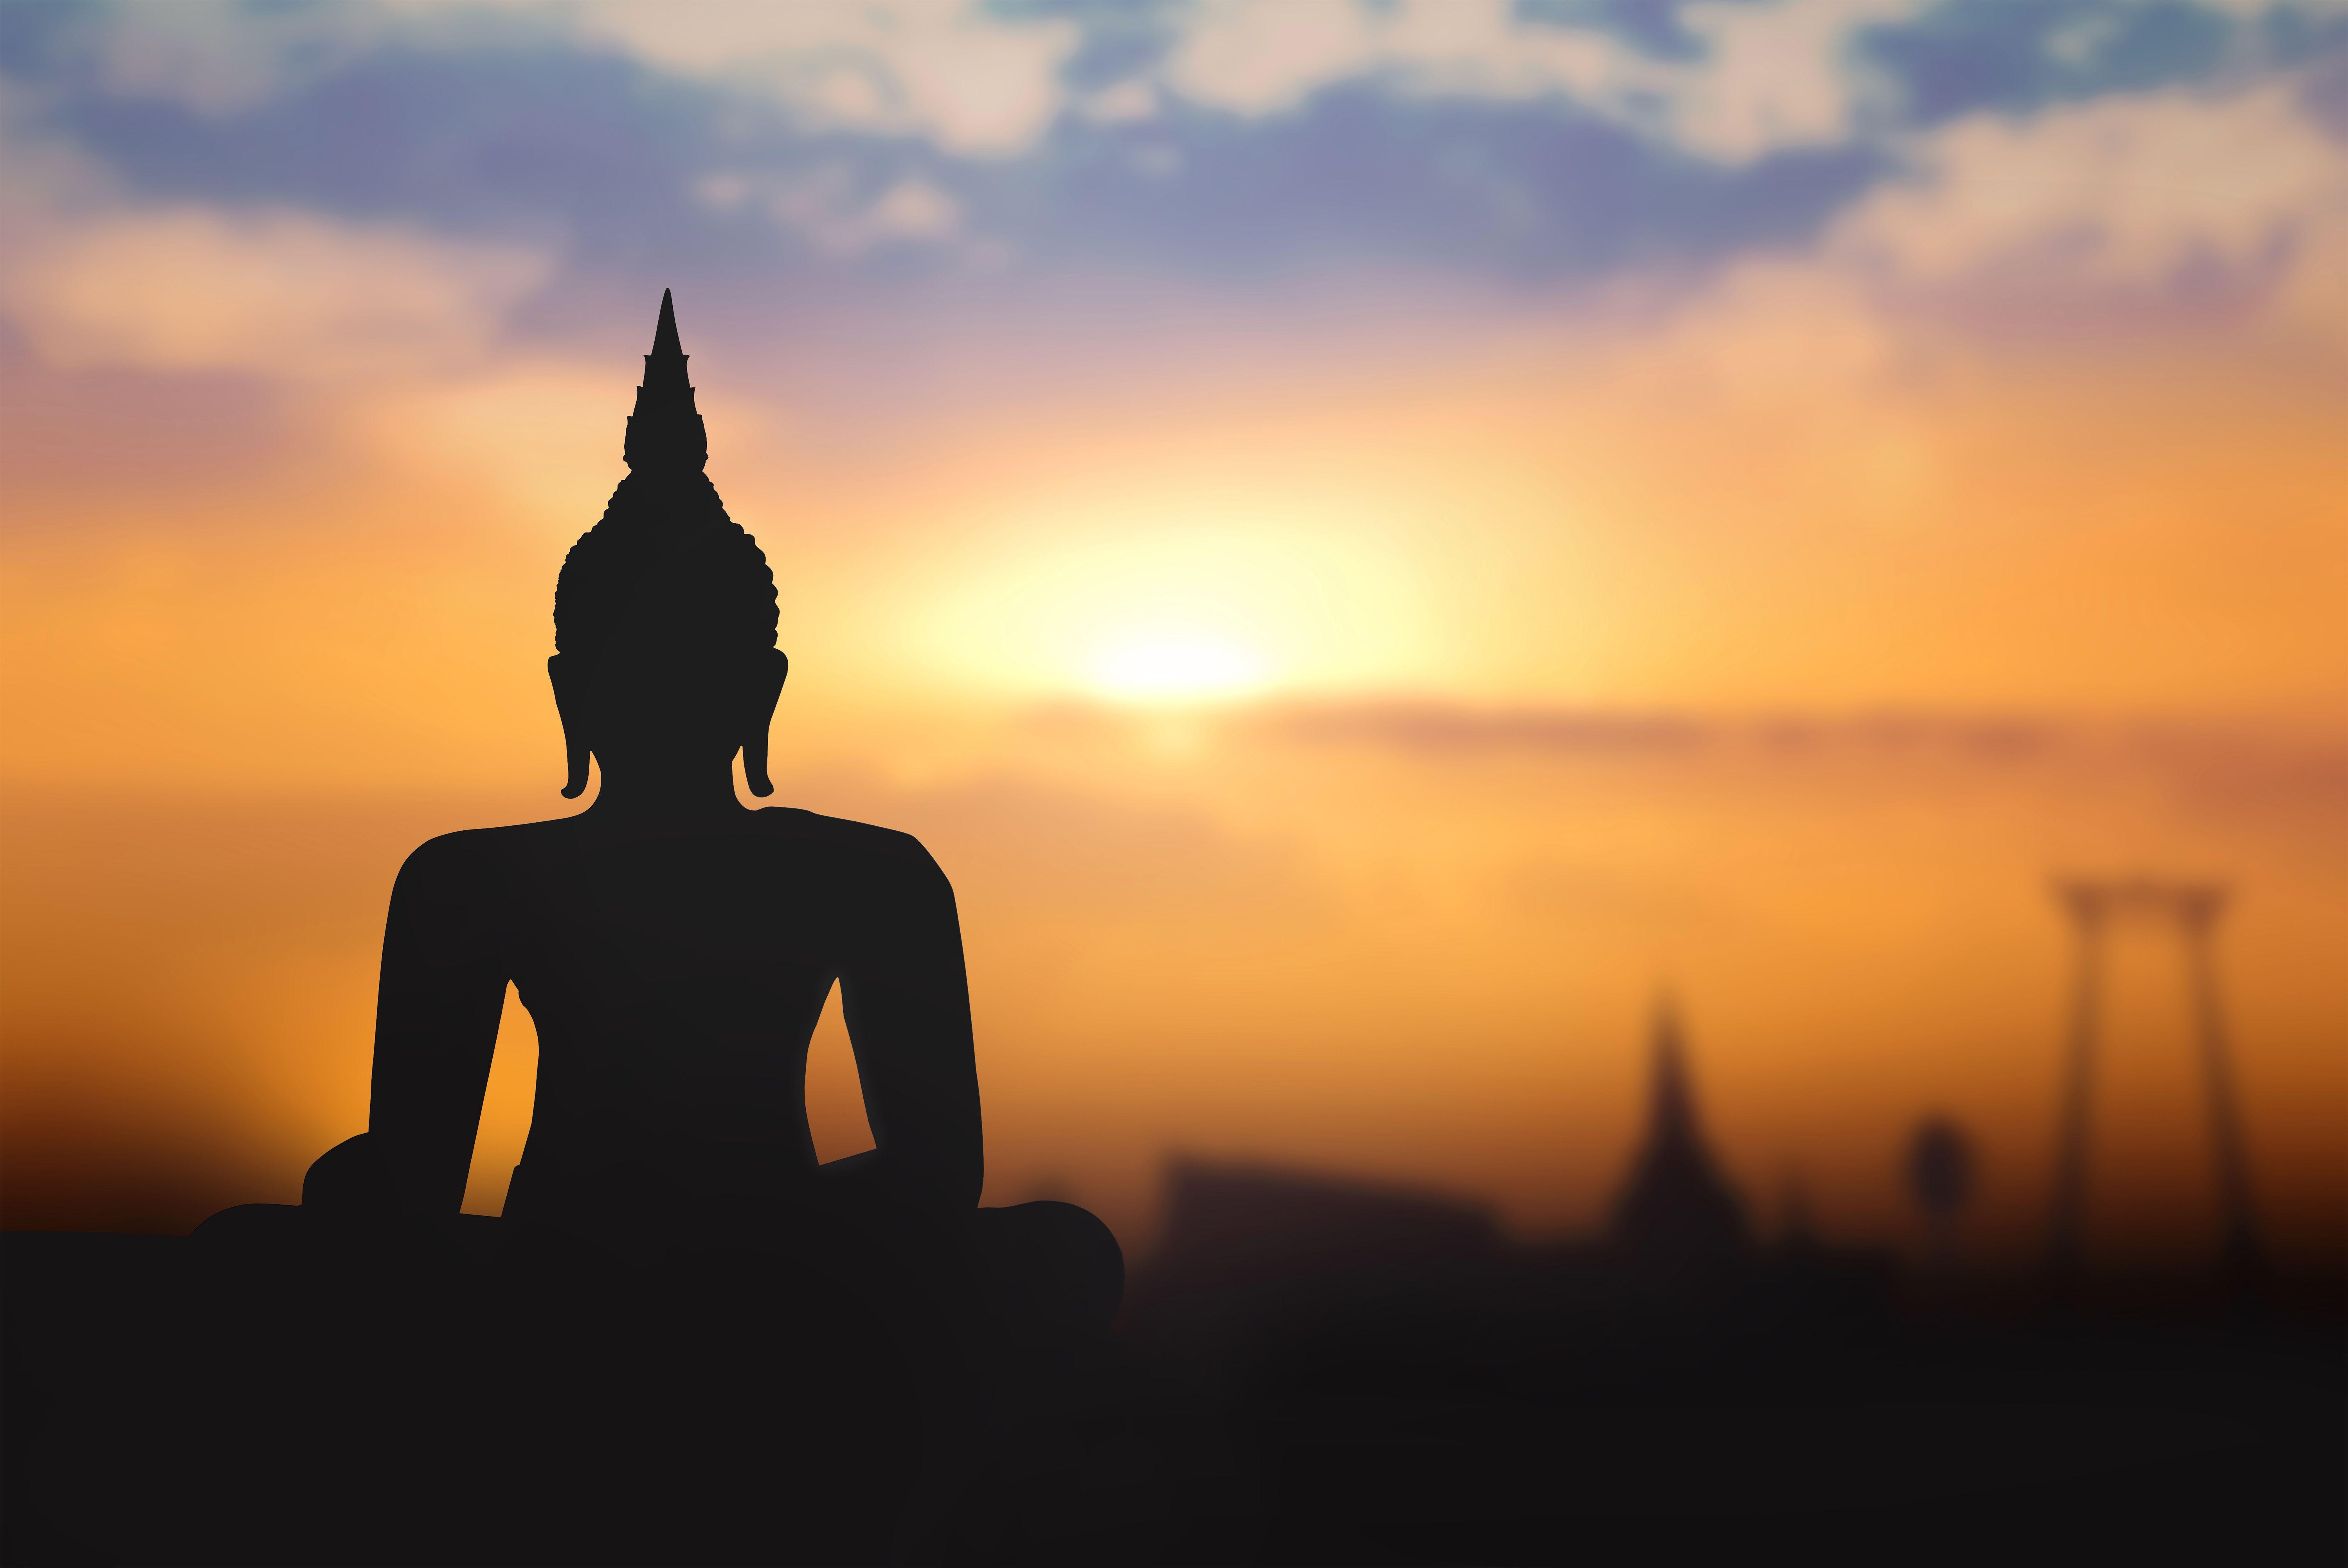 Buddha Sunrise Background. Places to Visit